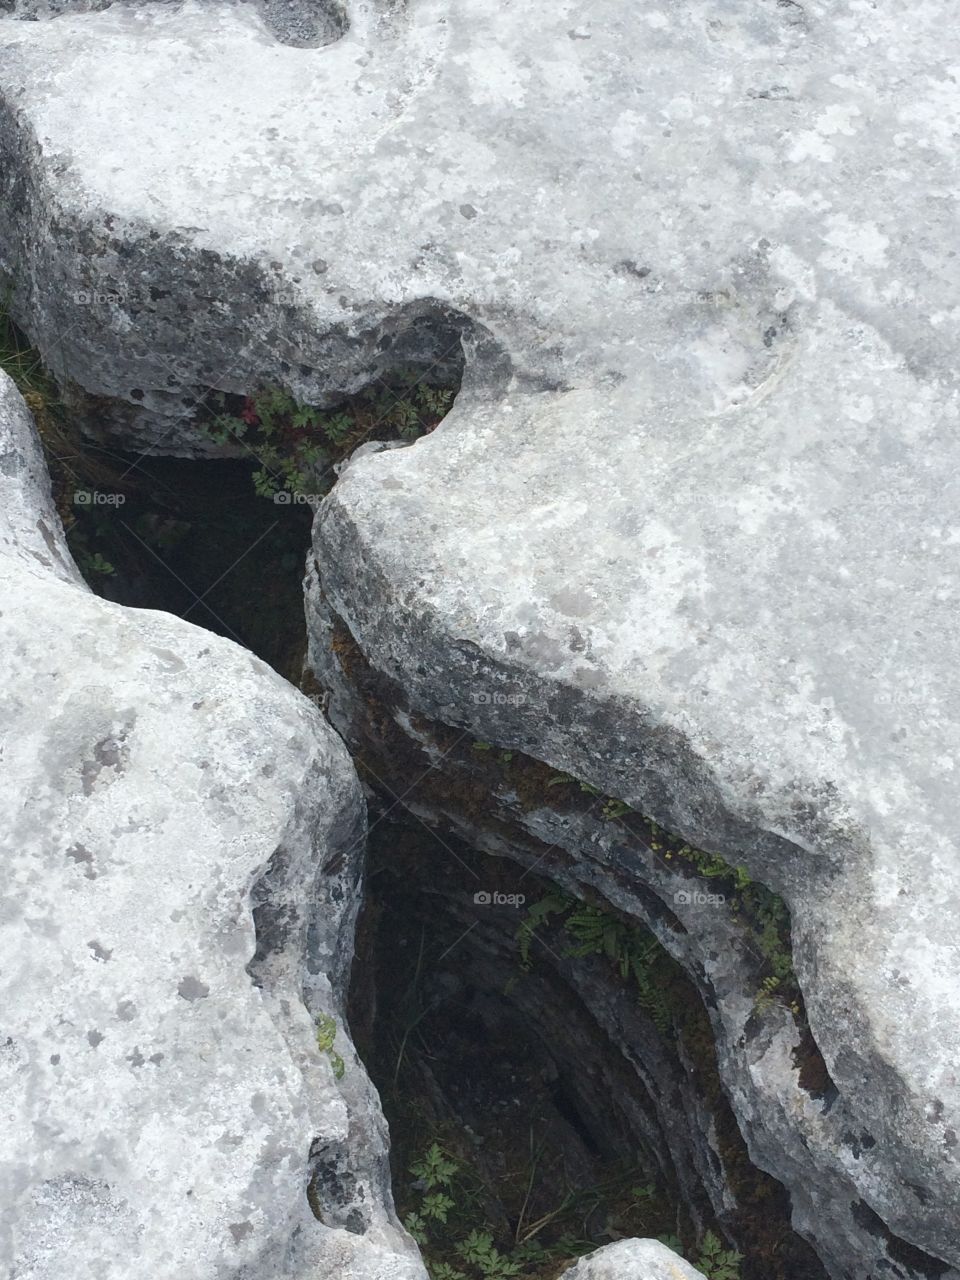 Burren rocks